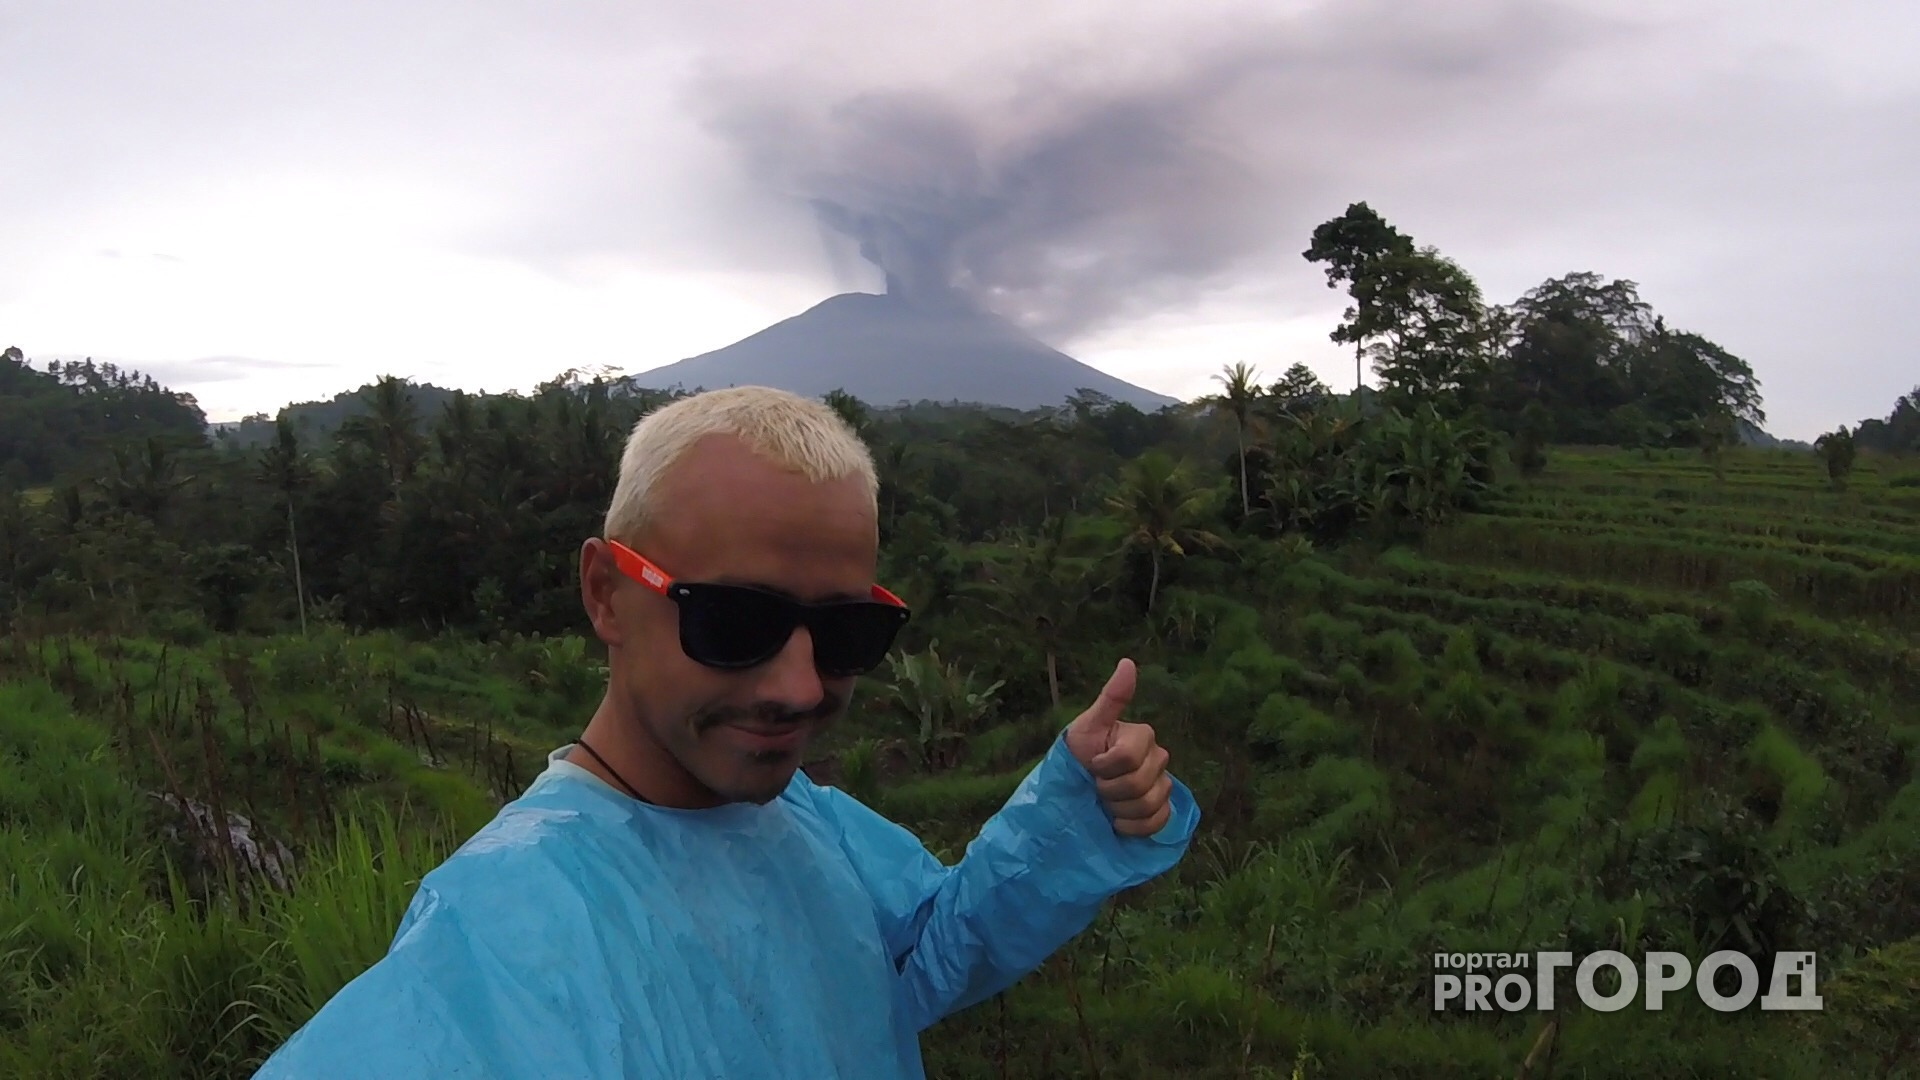 Чебоксарец оказался в эпицентре извержения вулкана Агунг на Бали